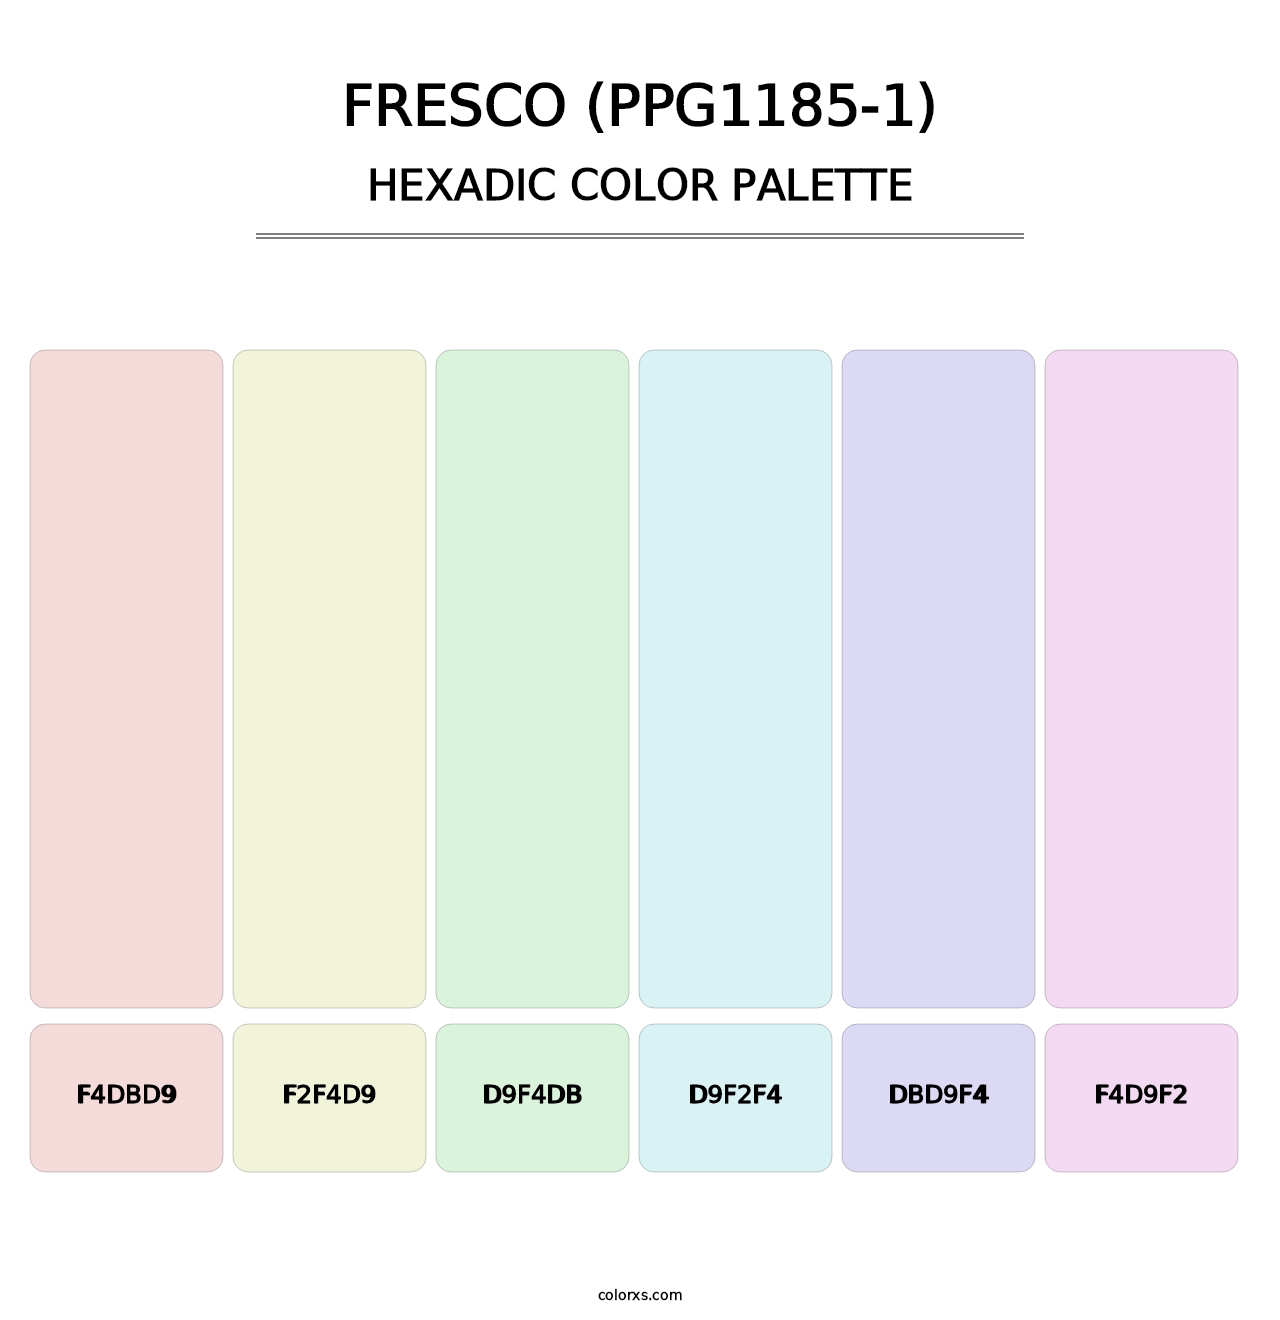 Fresco (PPG1185-1) - Hexadic Color Palette